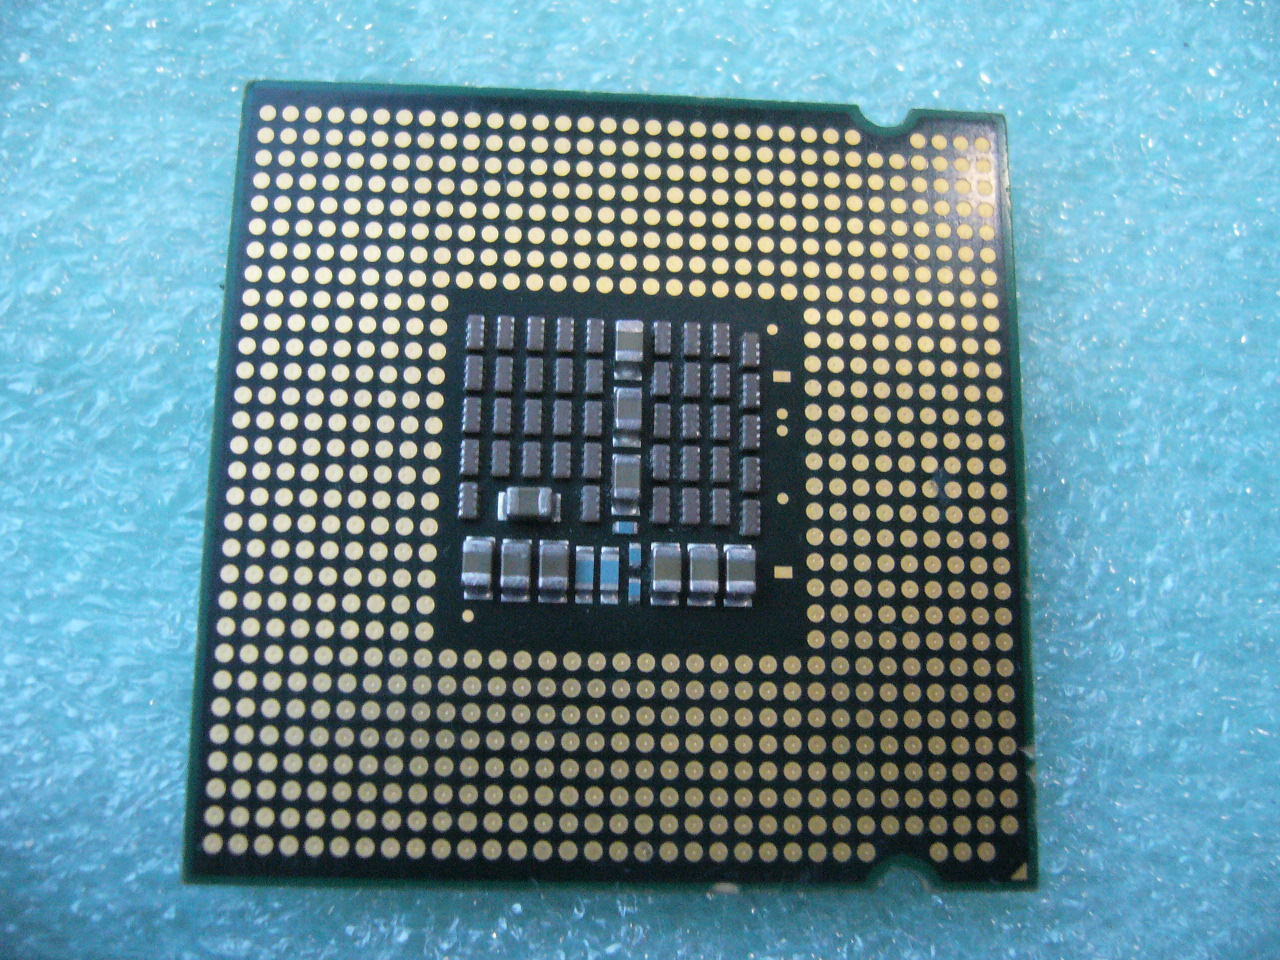 QTY 1x INTEL Quad Cores X3210 CPU 2.13GHz/8MB/1066Mhz LGA775 SLACU - zum Schließen ins Bild klicken